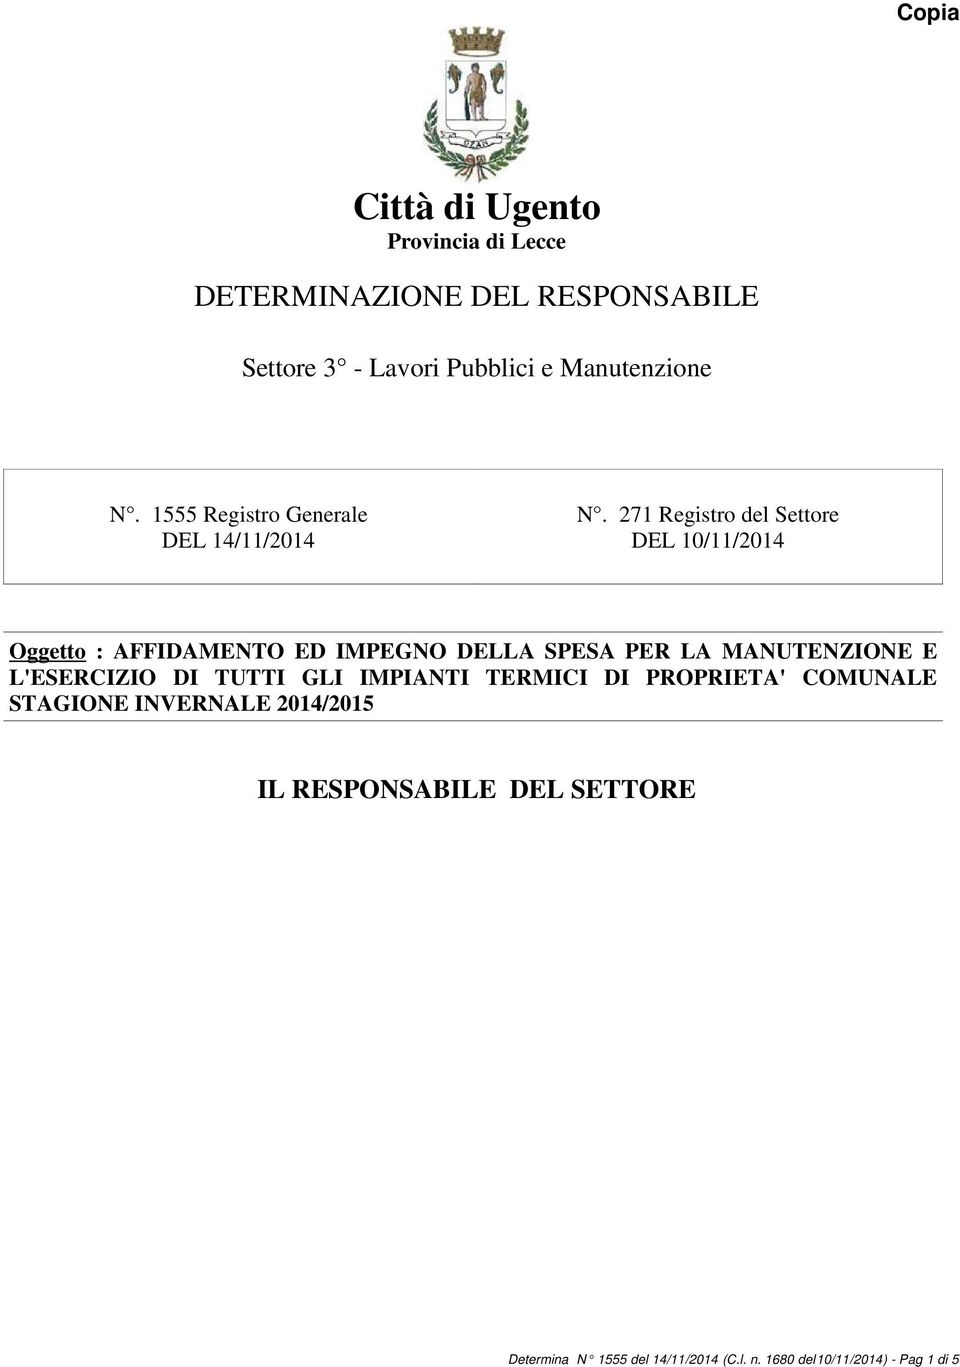 271 Registro del Settore DEL 10/11/2014 Oggetto : AFFIDAMENTO ED IMPEGNO DELLA SPESA PER LA MANUTENZIONE E